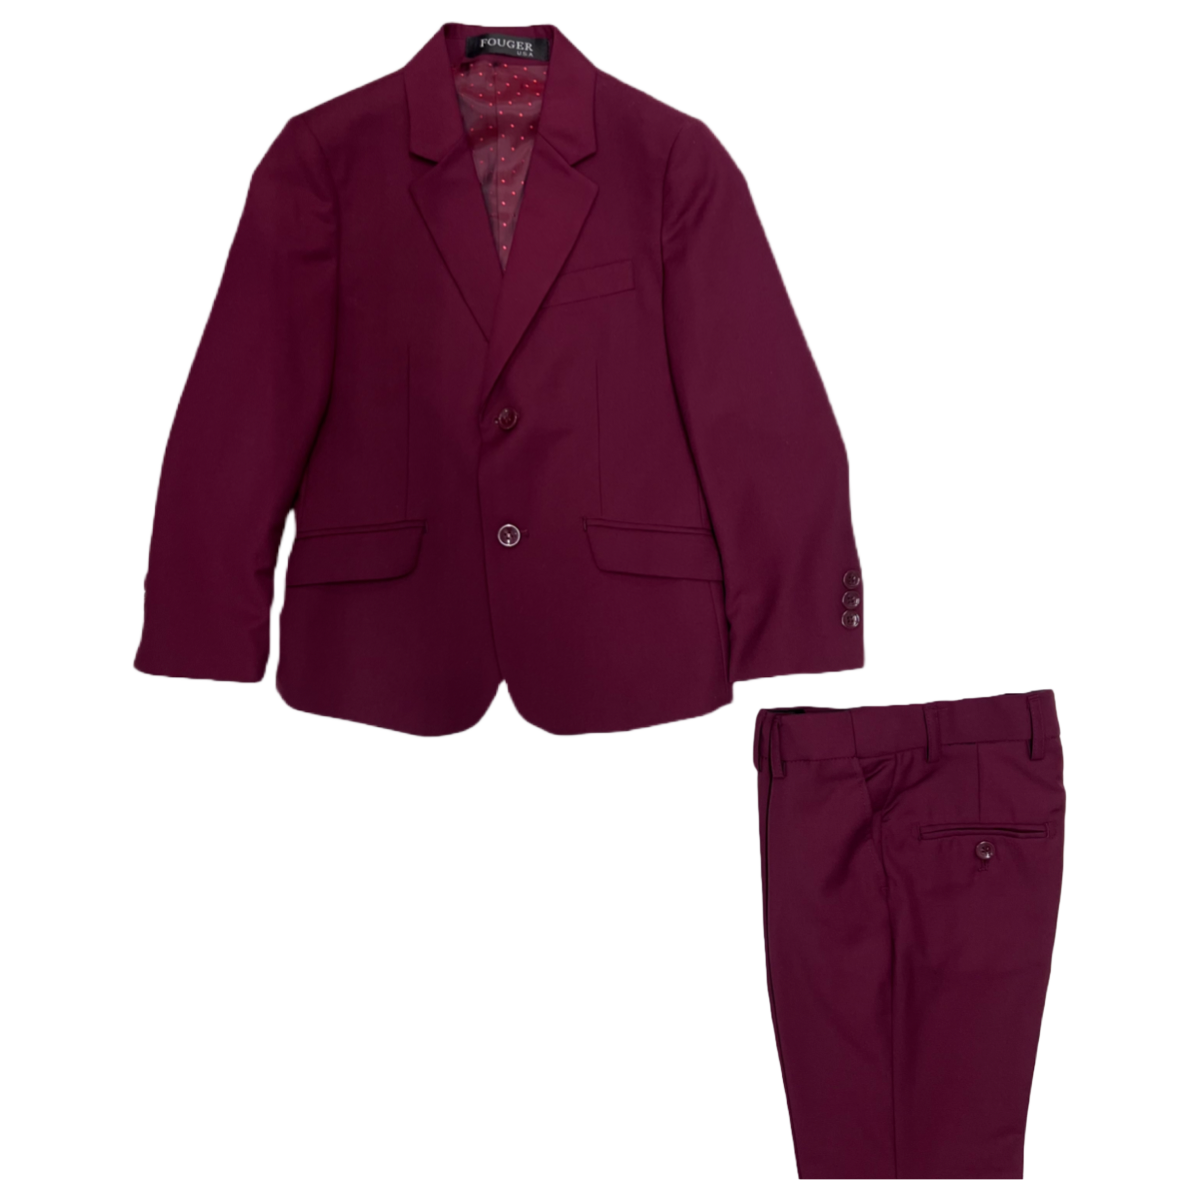 Fouger U.S.A. Slim Fit 3-Piece Burgundy Suit